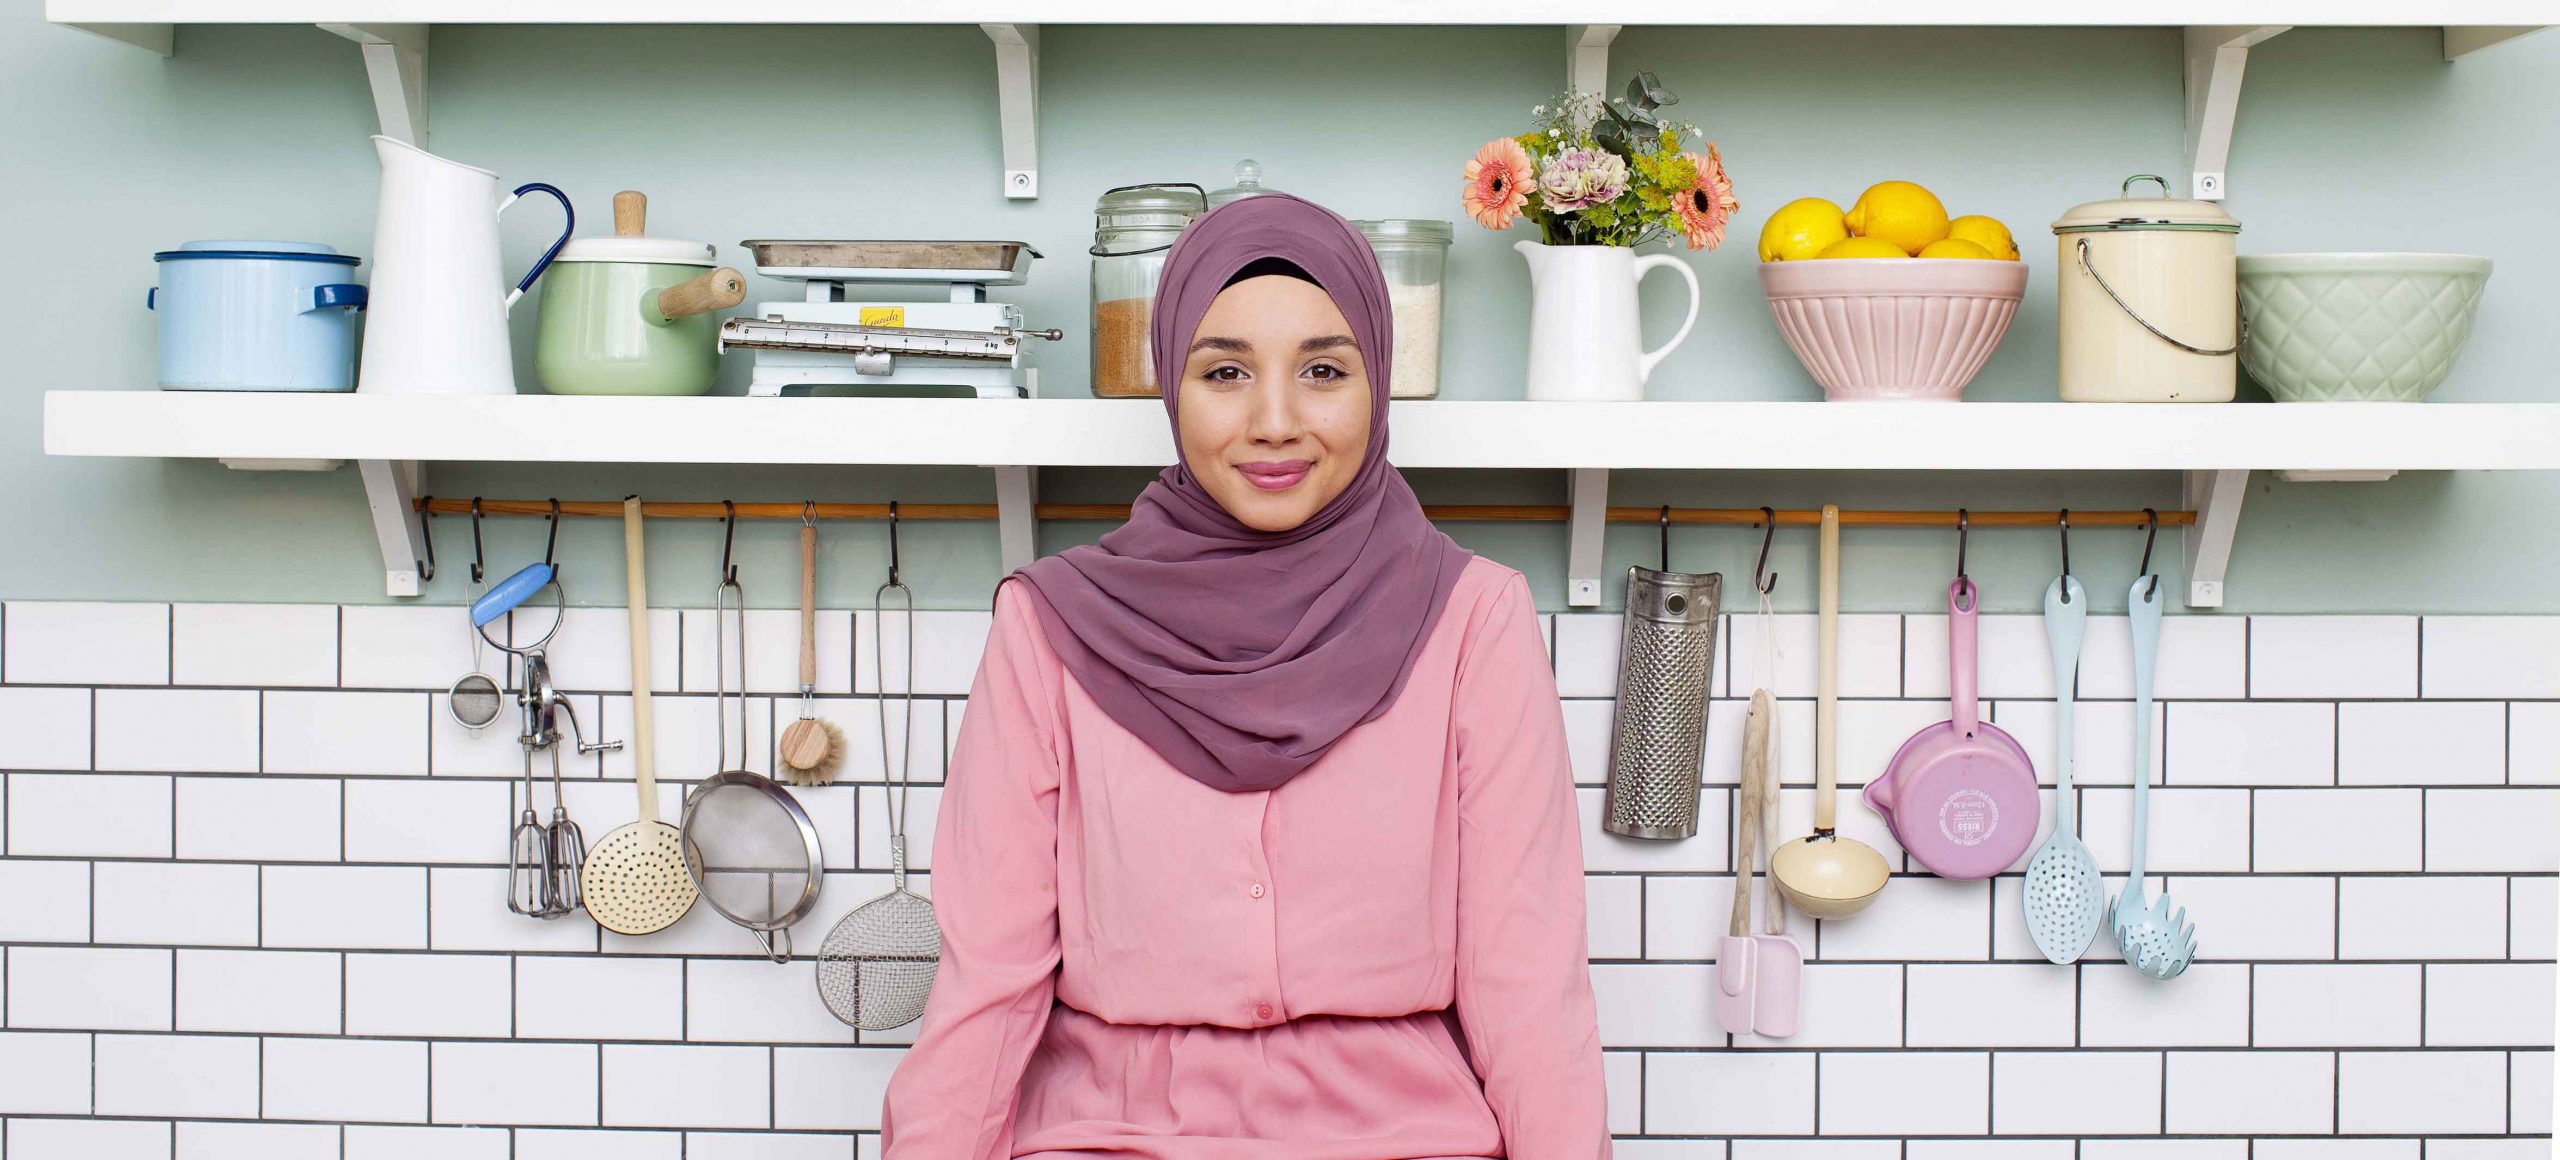 Camilla Hamid, som driver Instagramkontot My Kitchen Stories, står i ett kök